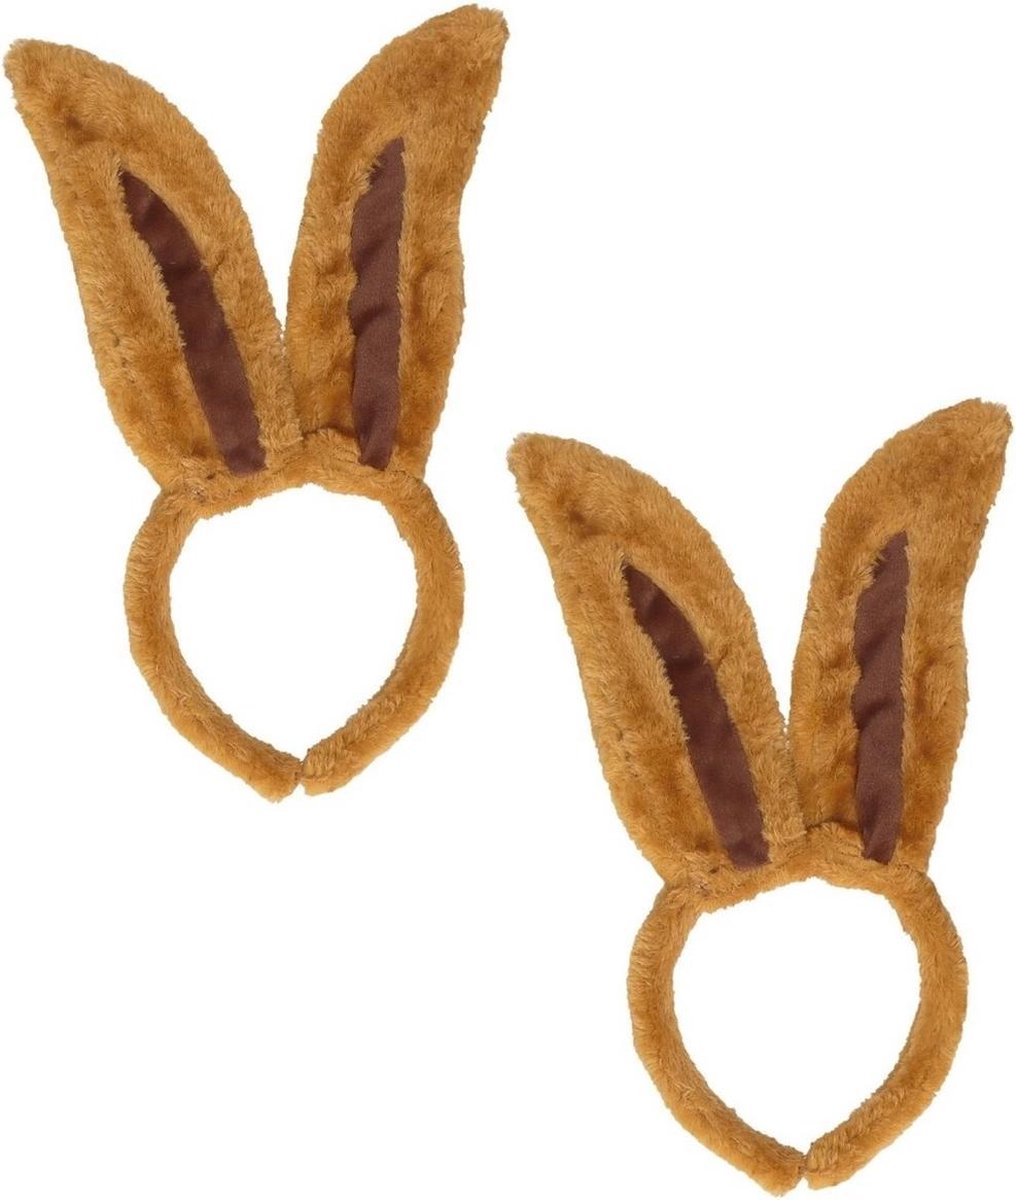 Marinjoc - Oreilles de lapin de Pâques - Oreilles de lapin diadème